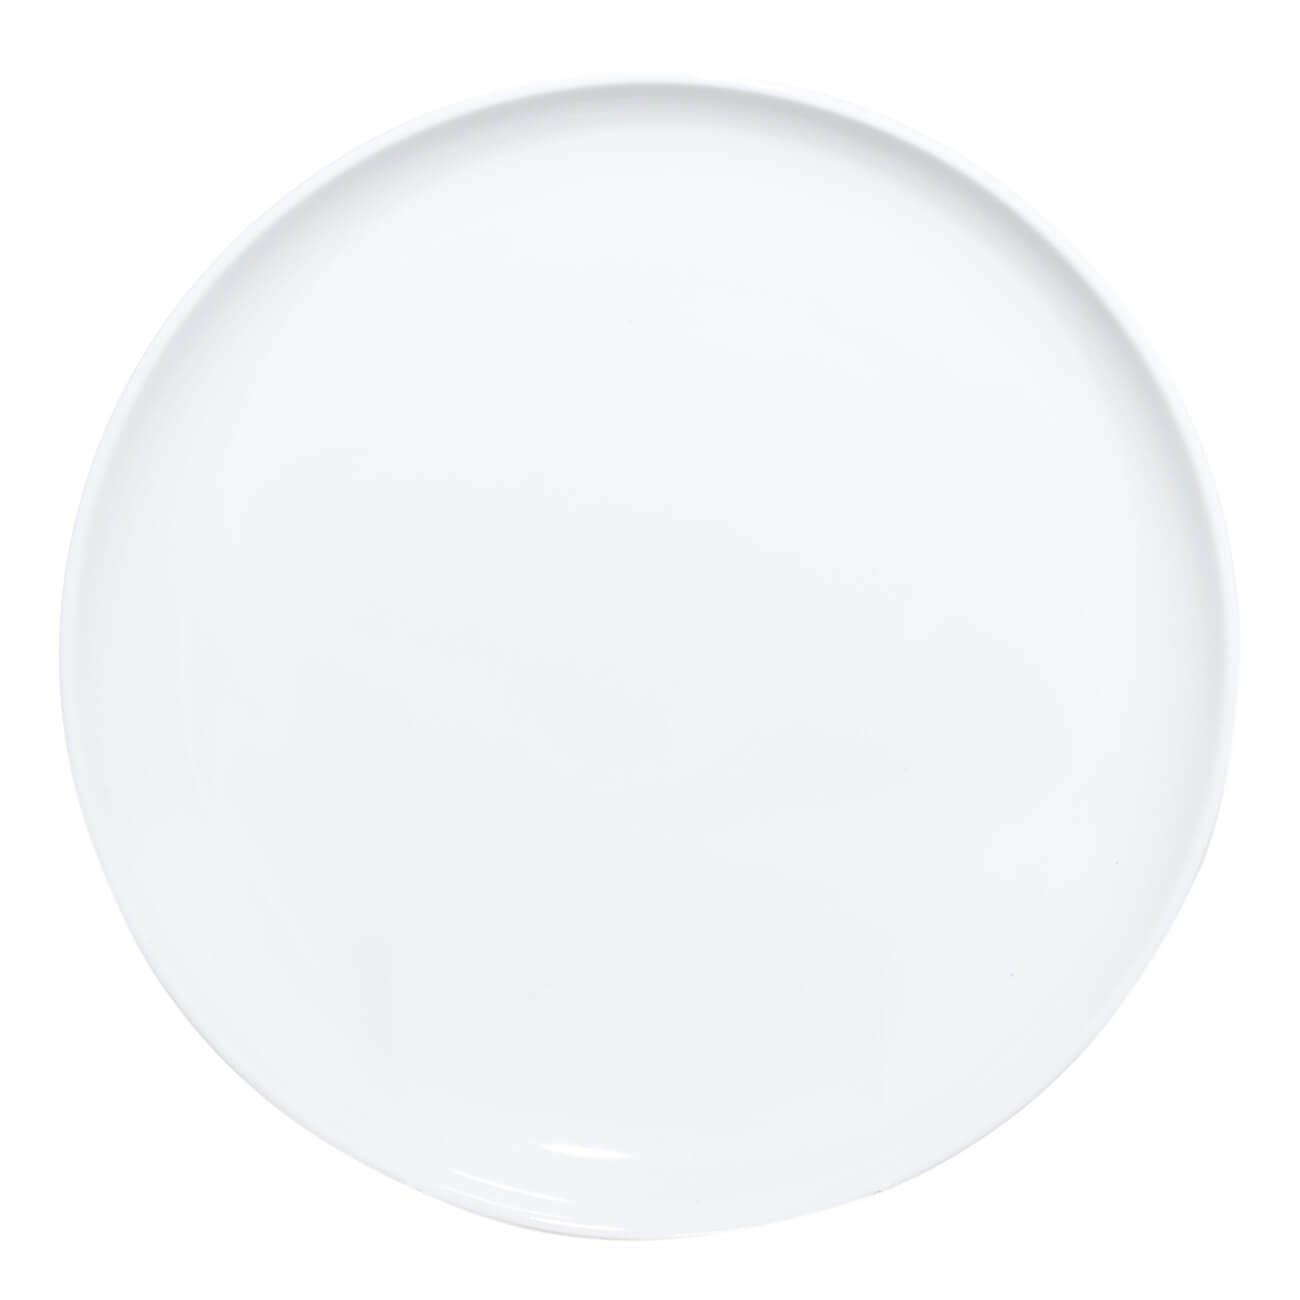 Тарелка обеденная, 25 см, фарфор P, белая, Silence тарелка обеденная wedgwood wgw 40003894 гибискус 27 см